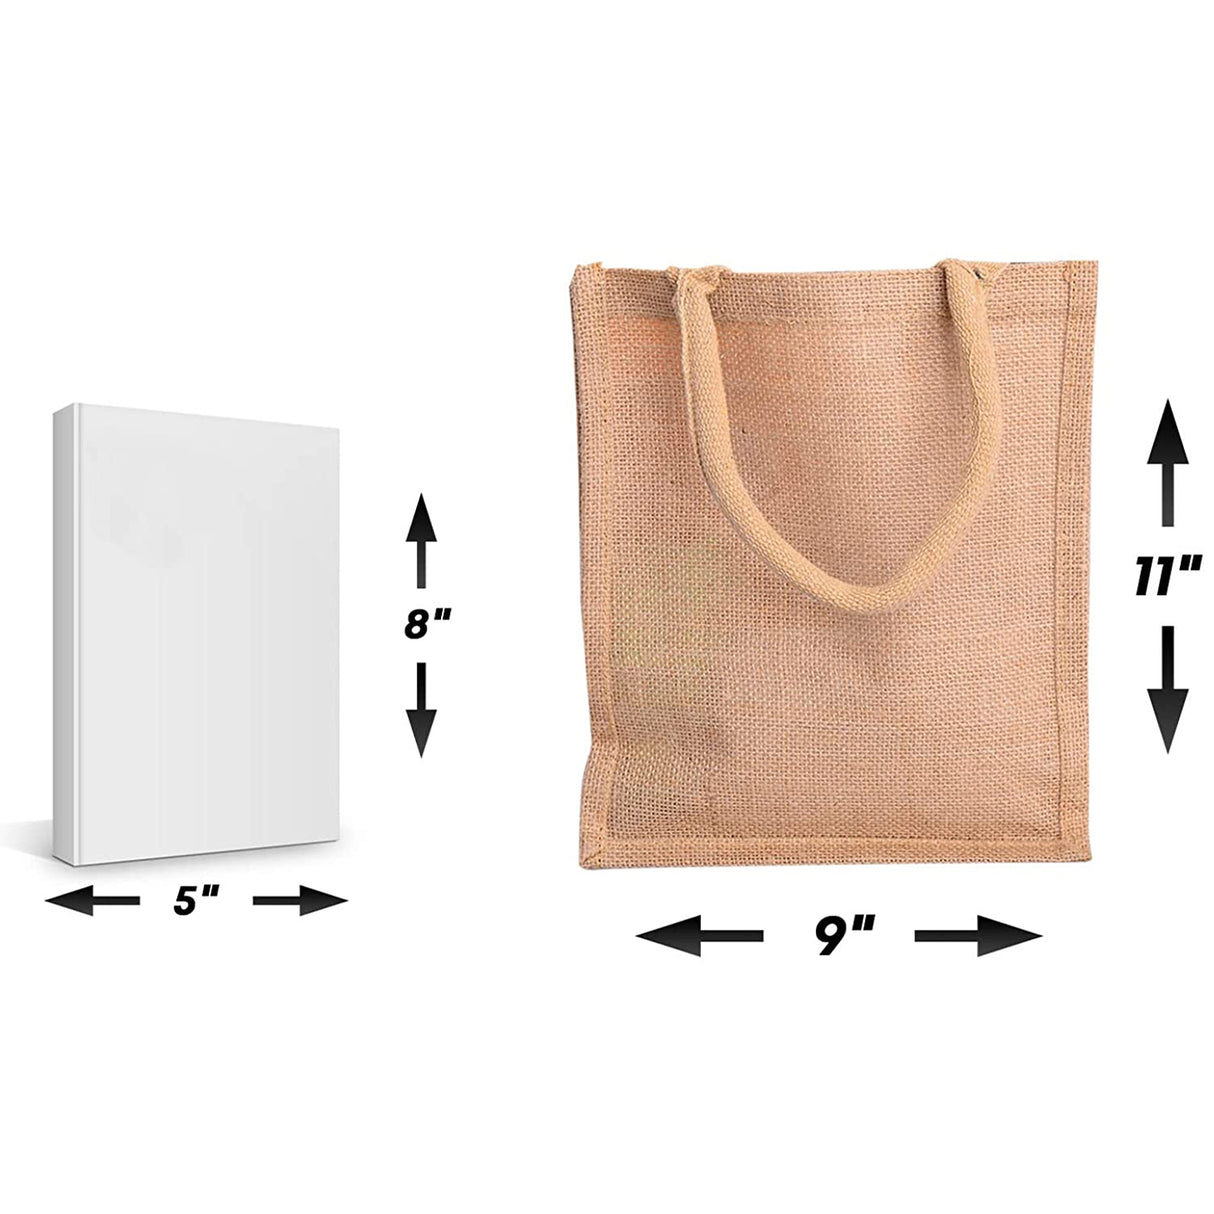 affordable-small-burlap-bag-dimensions